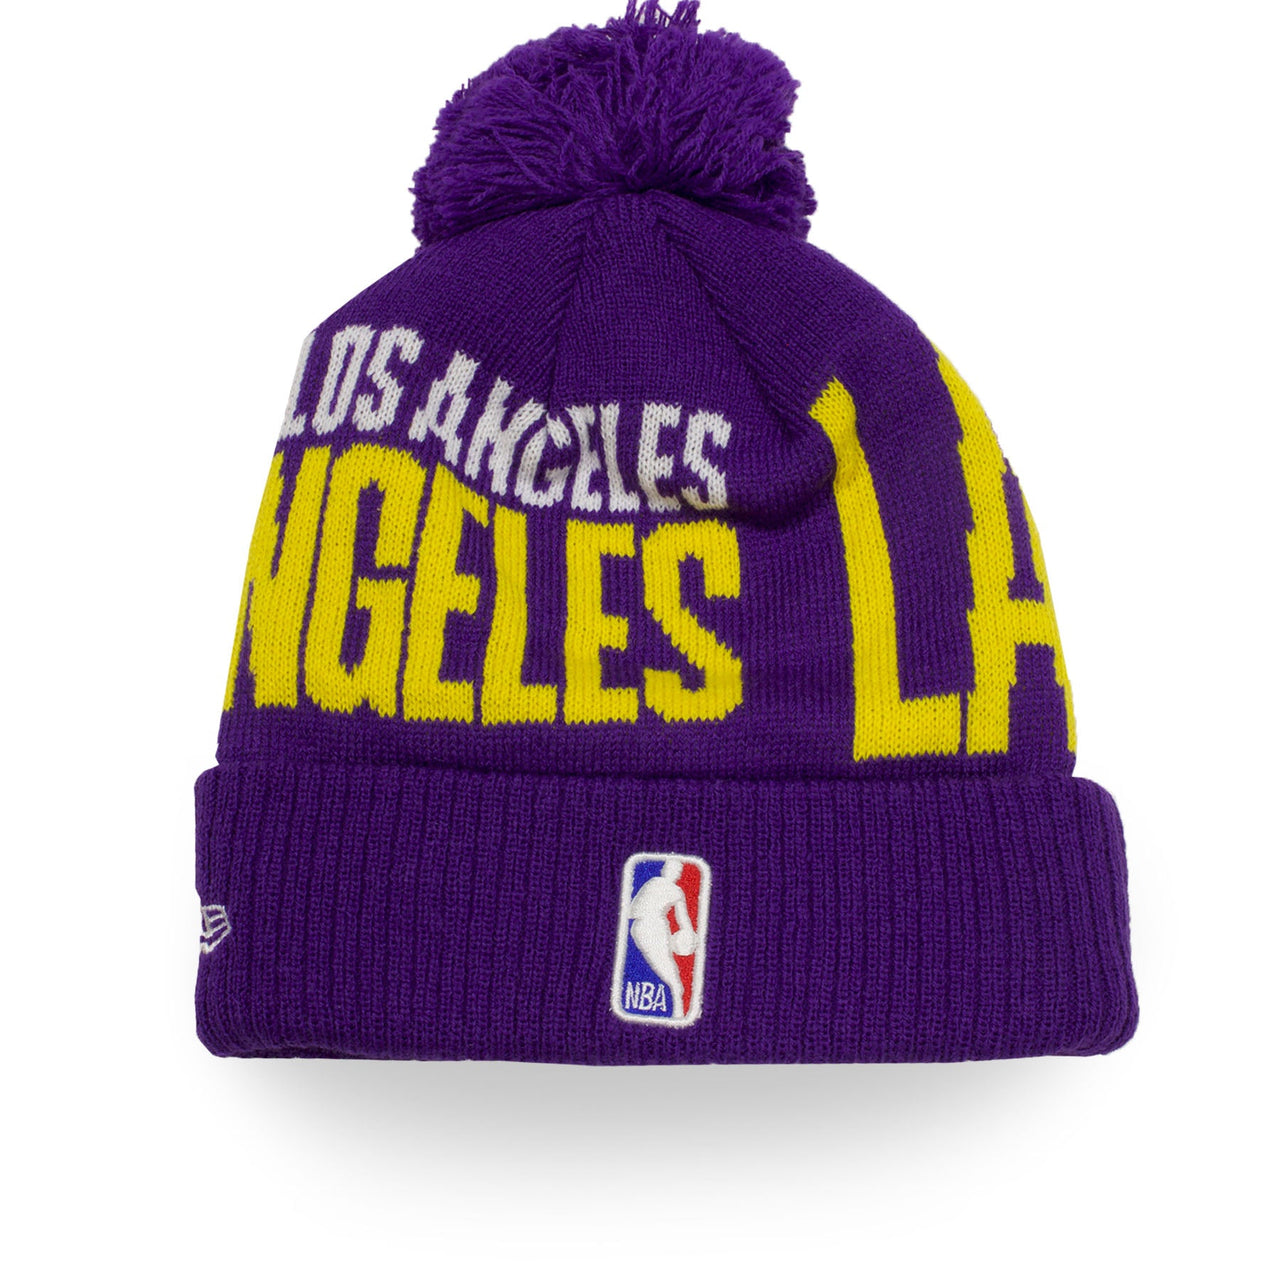 Los Angeles Lakers 2019 Series Tip Off Purple Winter Beanie